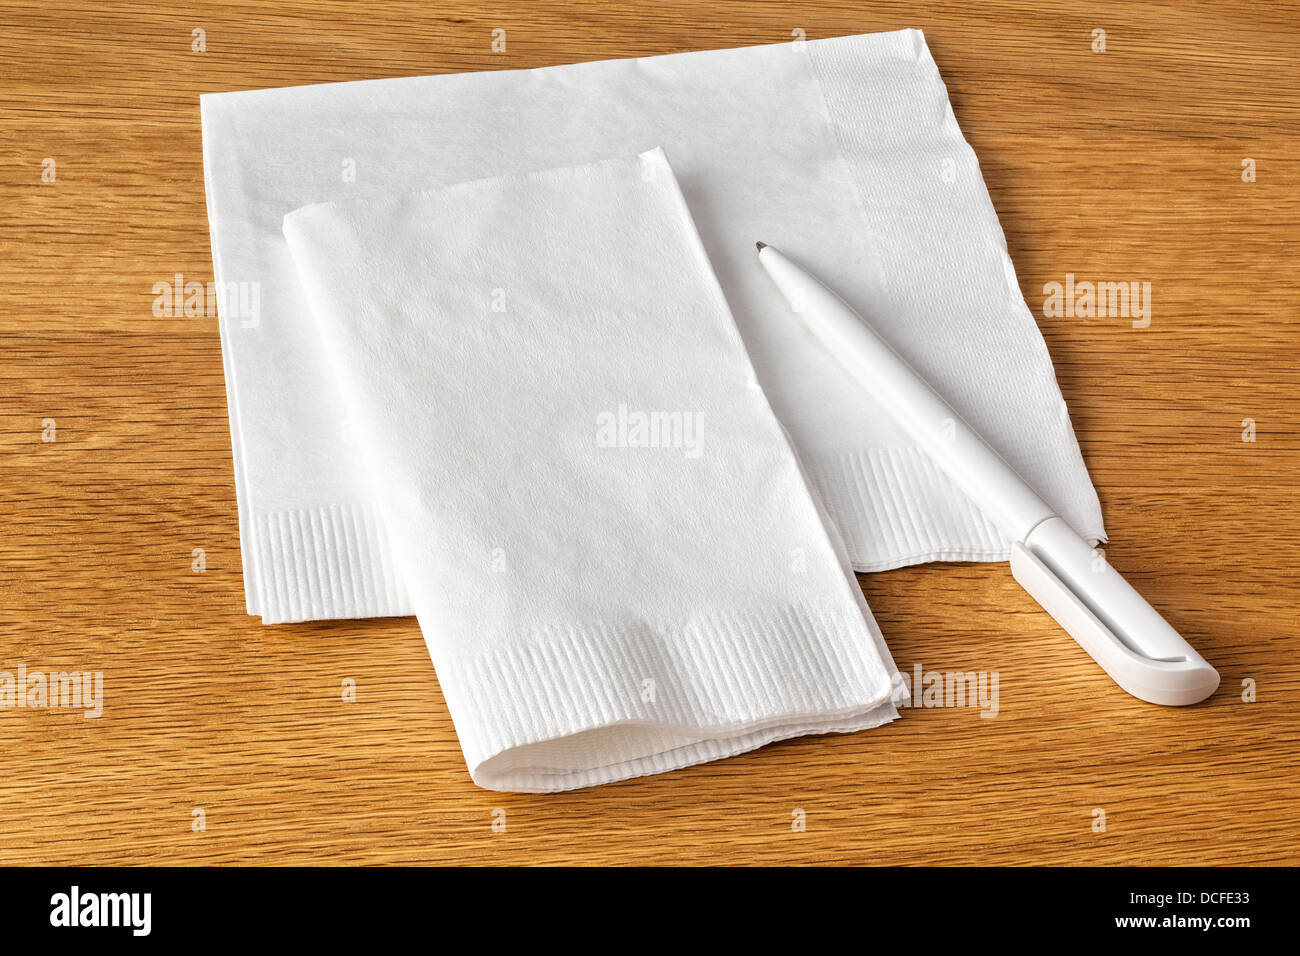 Serviette et stylo - Serviette ou serviette et un stylo sur la table, prêt à prendre note de votre dernière grande idée. Banque D'Images